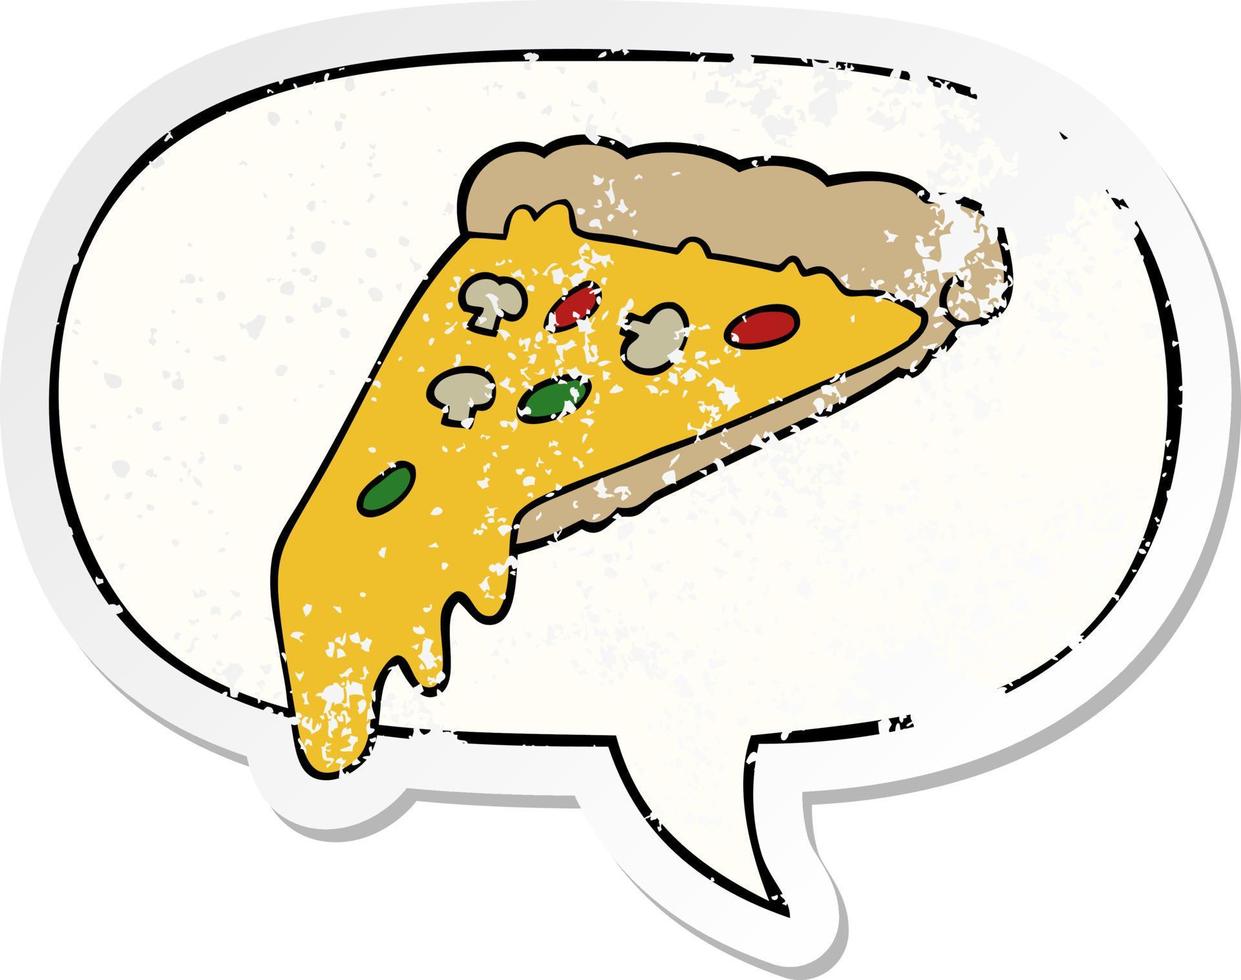 adesivo em apuros de fatia de pizza de desenho animado e bolha de fala vetor